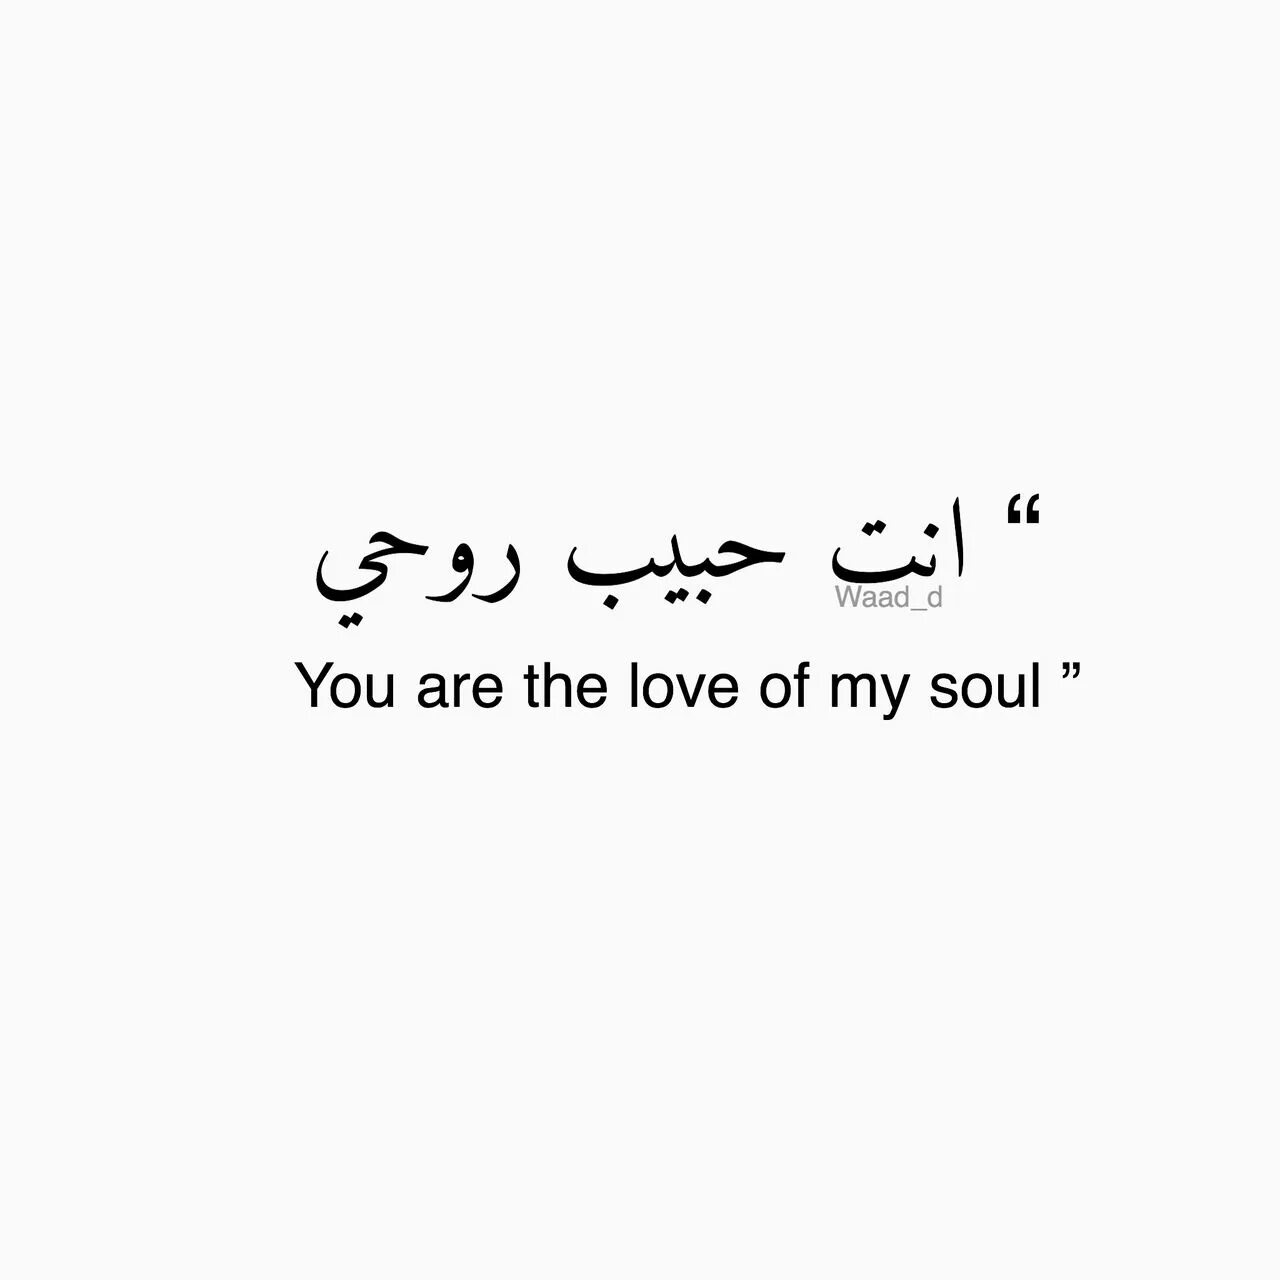 Надписи на арабском языке. Красивые слова на арабском. Красивые фразы на арабском. Арабские фразы на арабском. Красивые надписи на арабском языке.